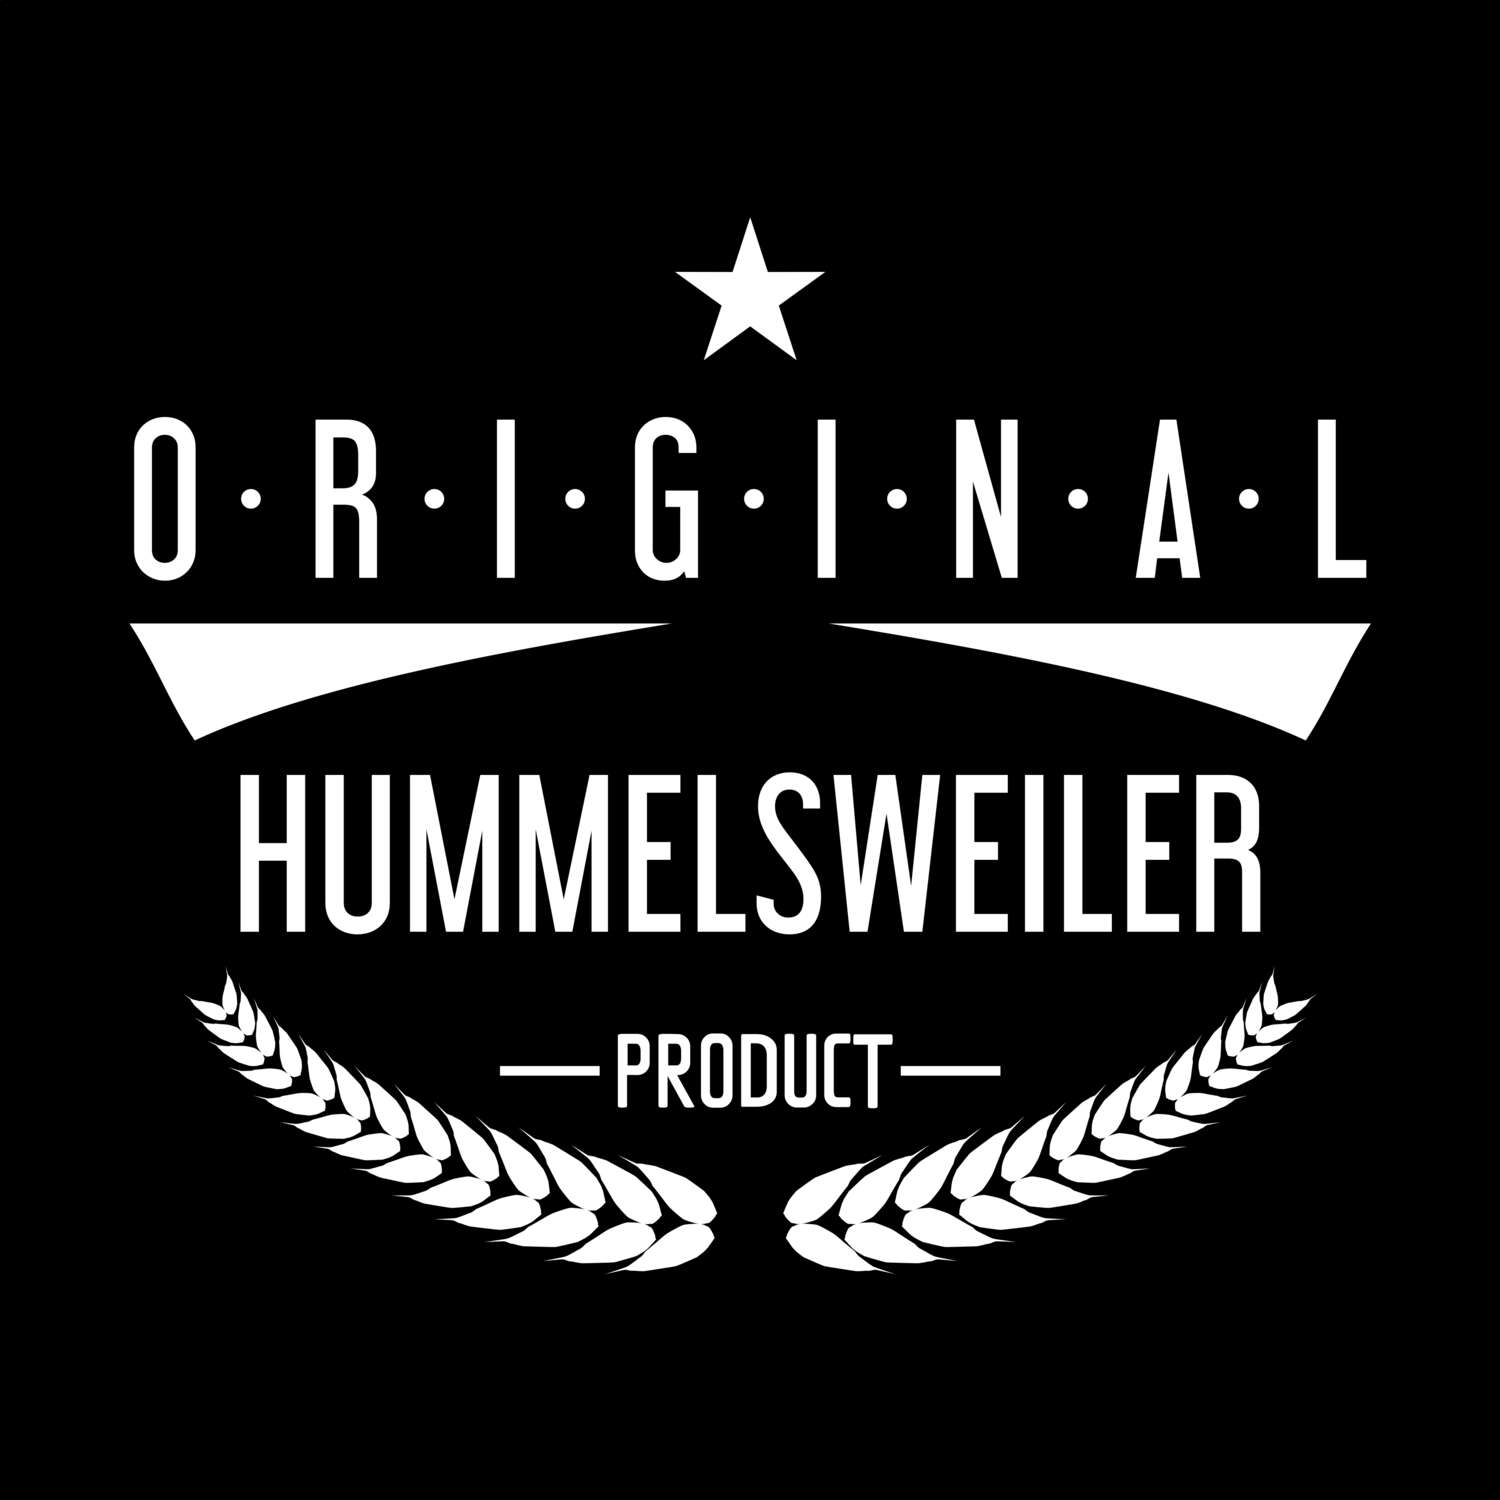 Hummelsweiler T-Shirt »Original Product«